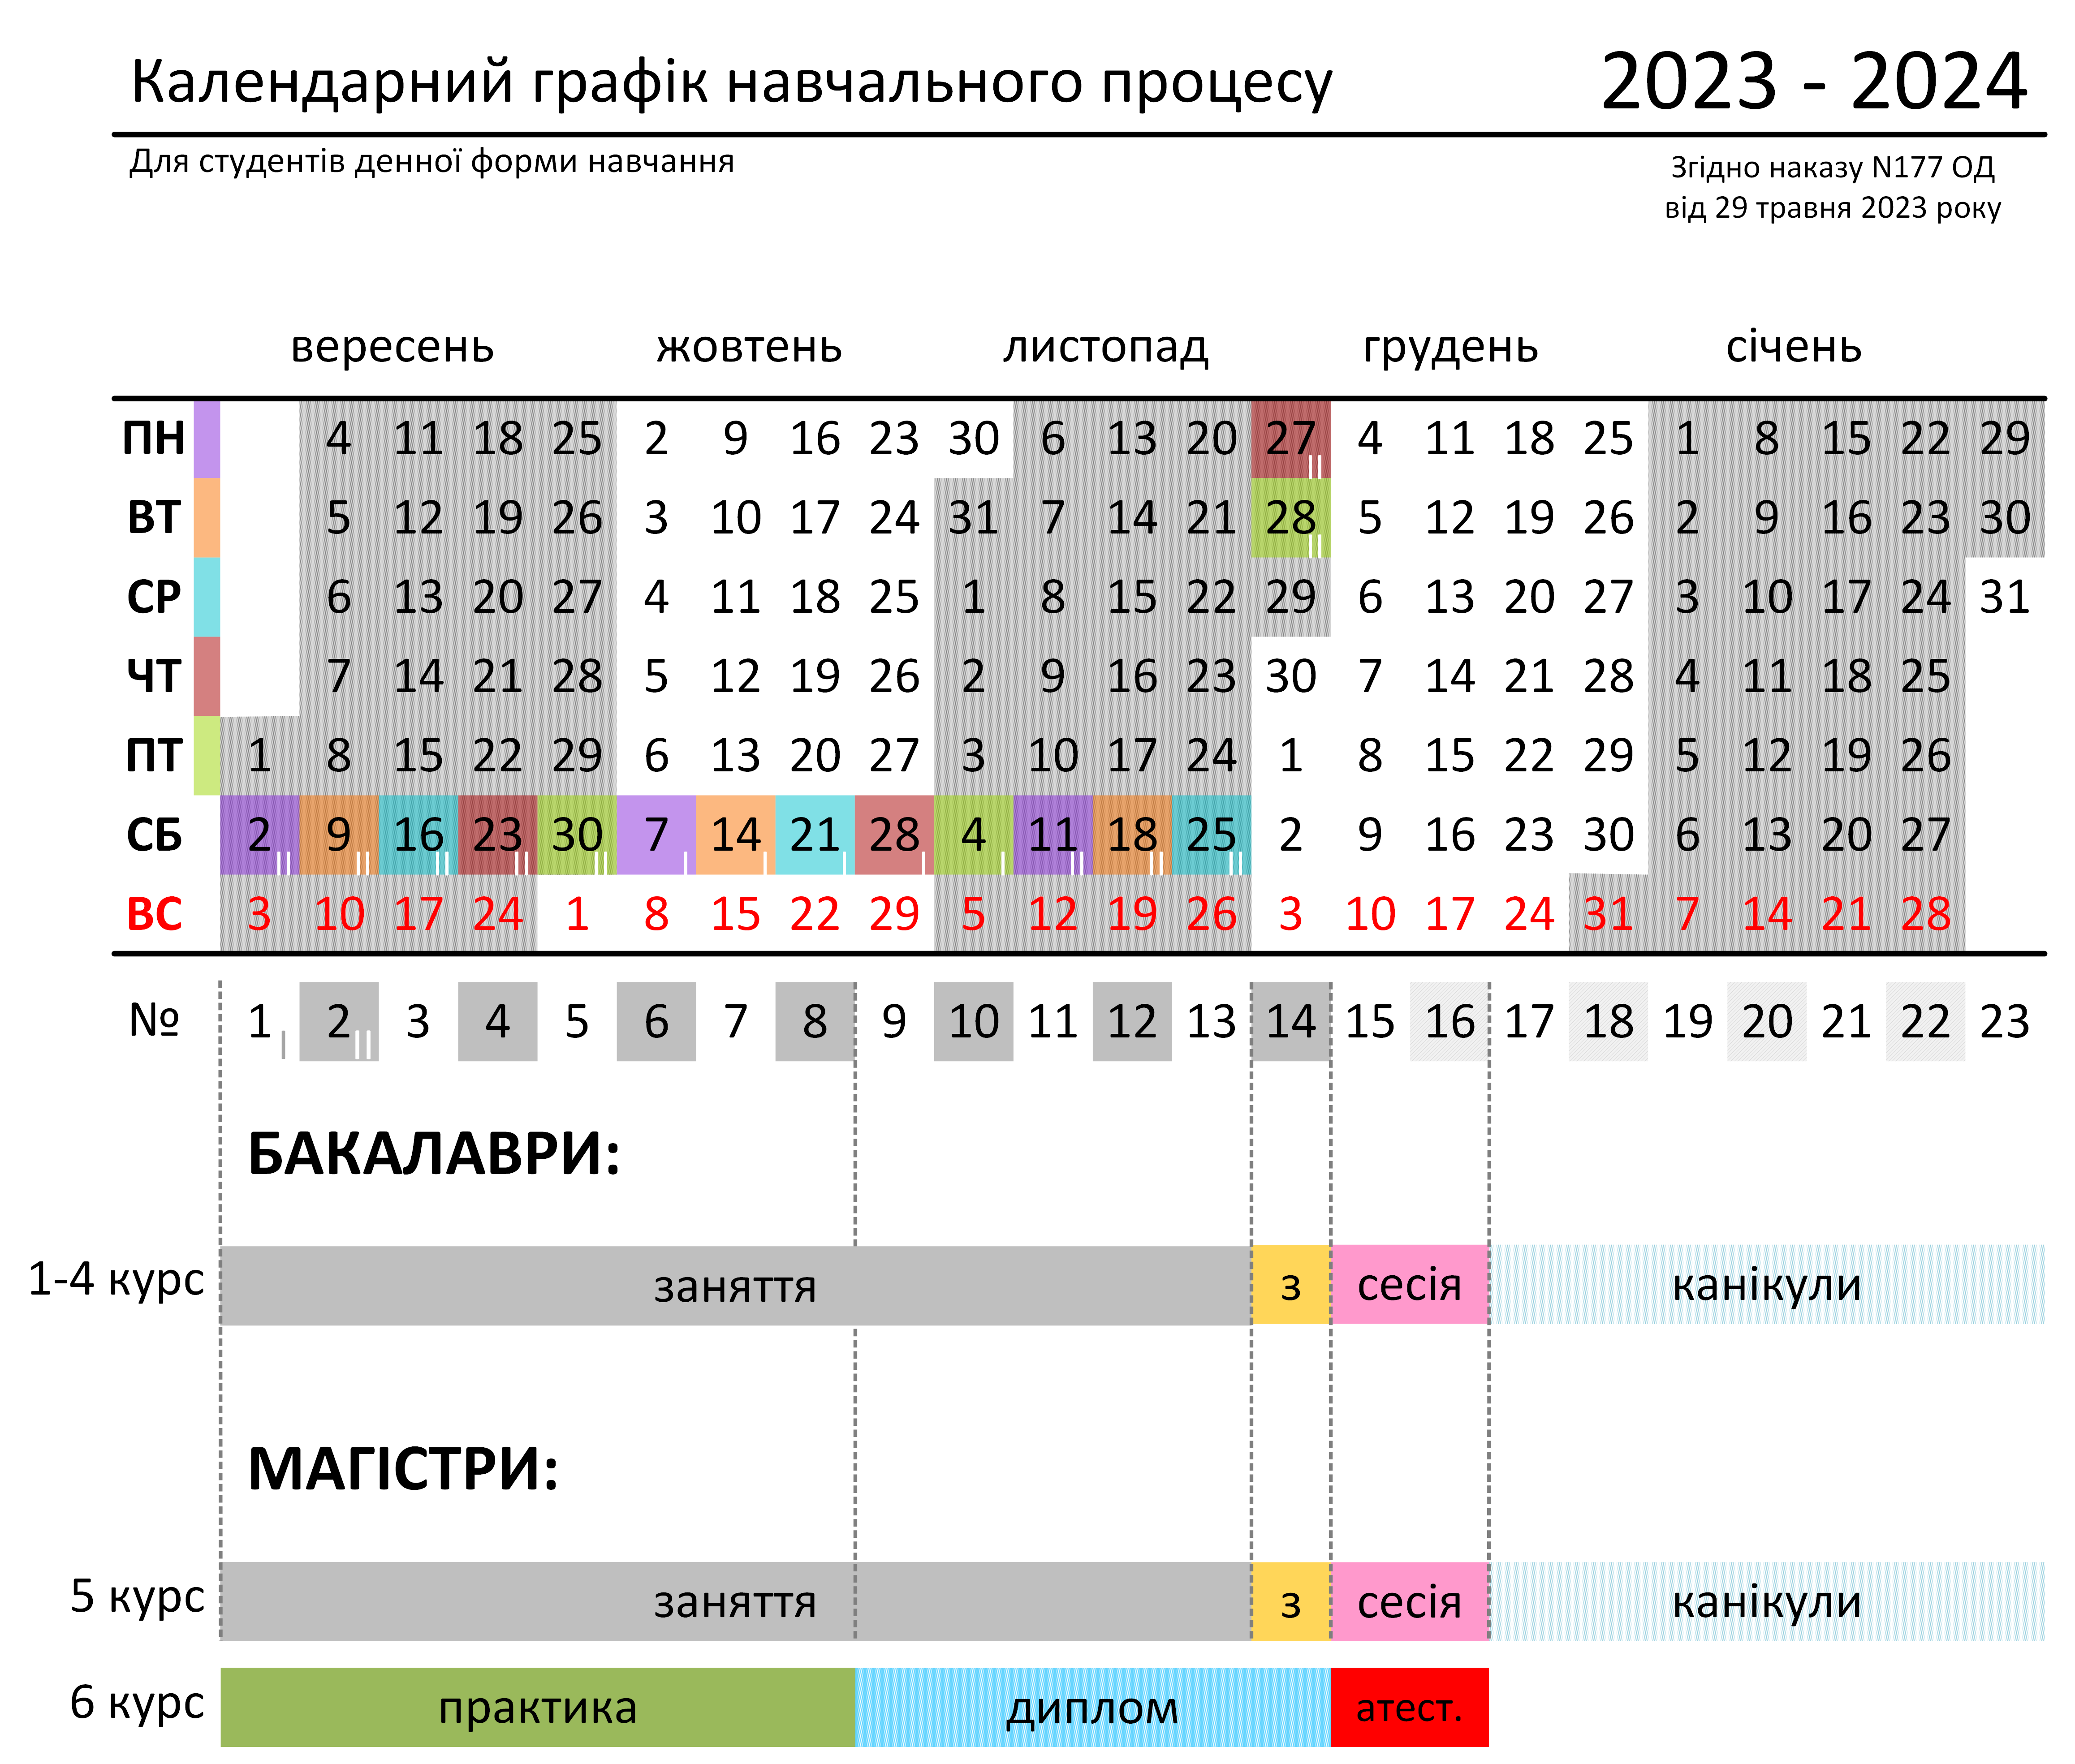 Графік НП 2023-2024 осінь денне